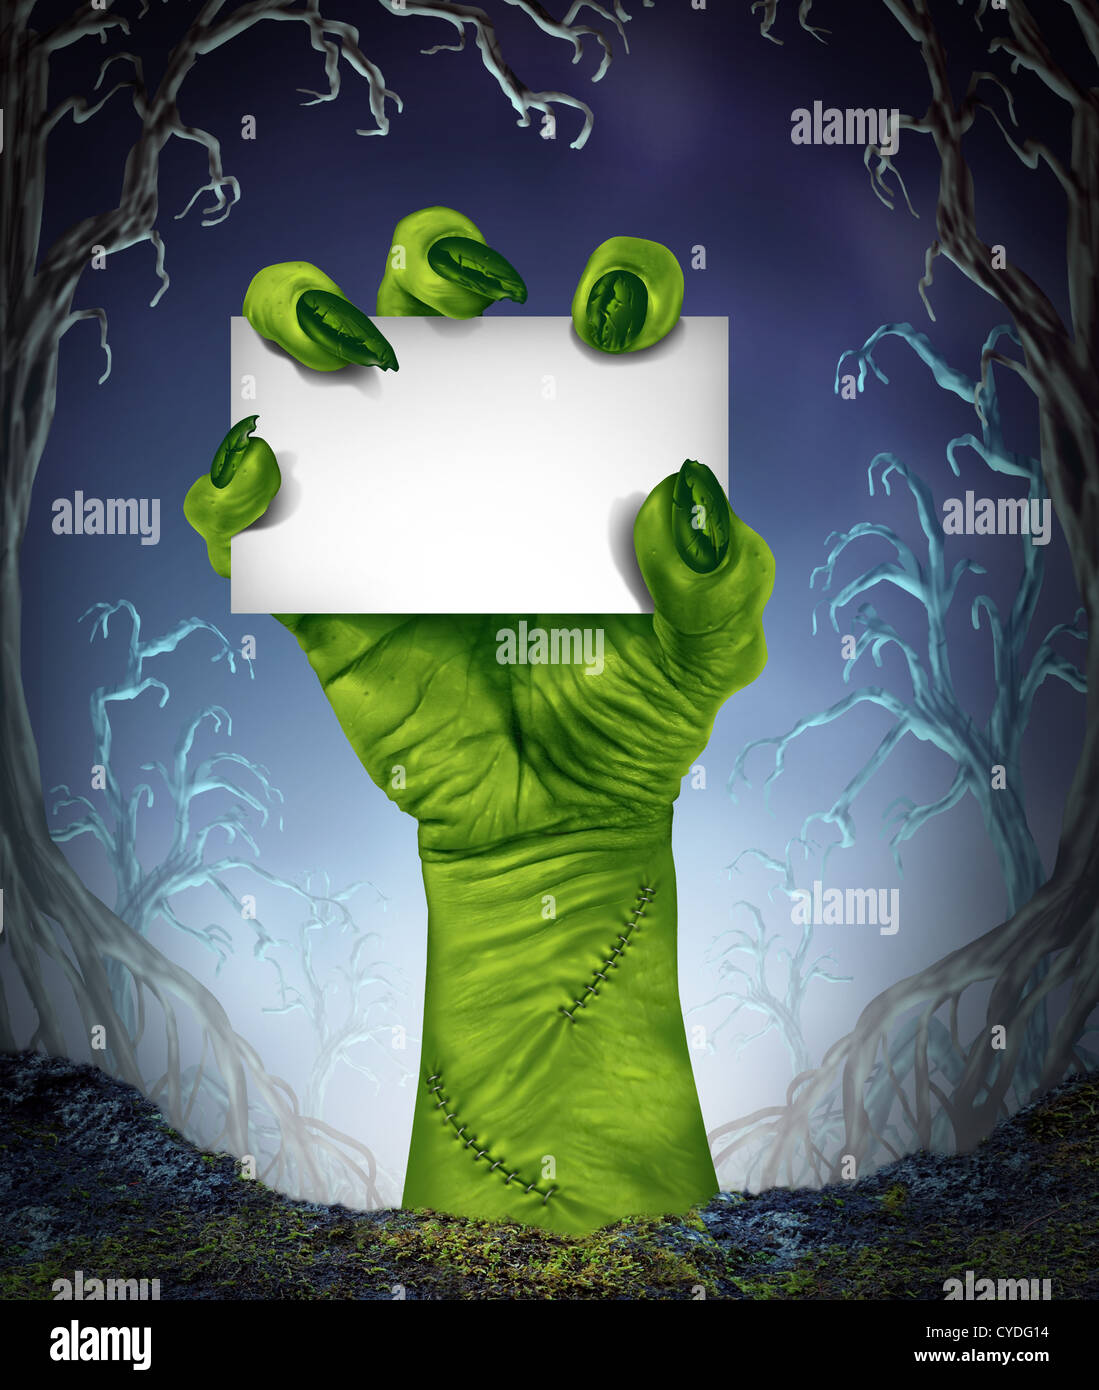 La hausse Zombie hand holding a blank sign card comme un symbole ou Scary Halloween sinistre avec texture peau verte et monster doigts Banque D'Images